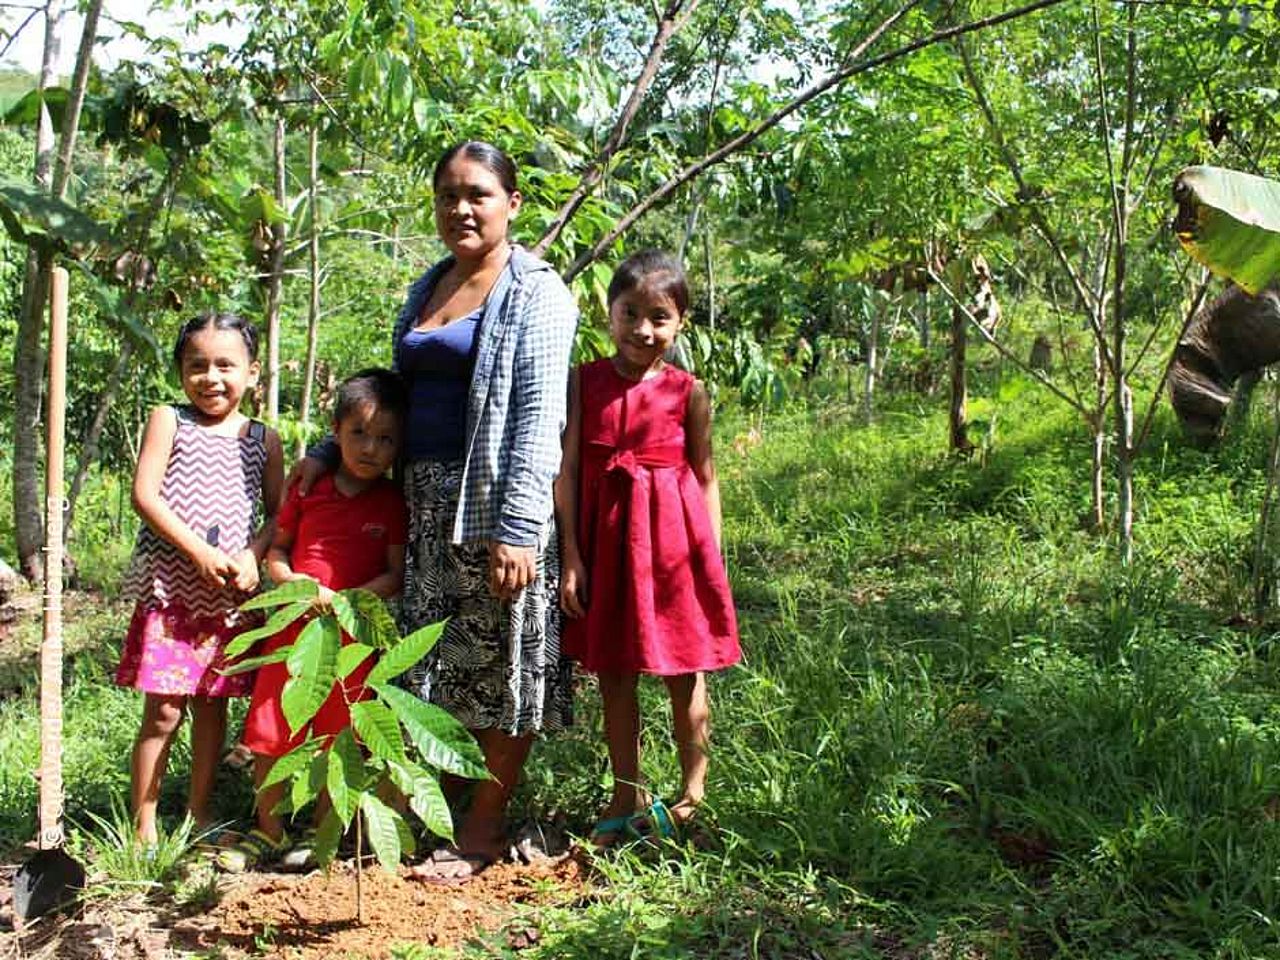 Nachhaltige Landwirtschaft garantiert den indigenen Familien ein sicheres Einkommen. ©OroVerde